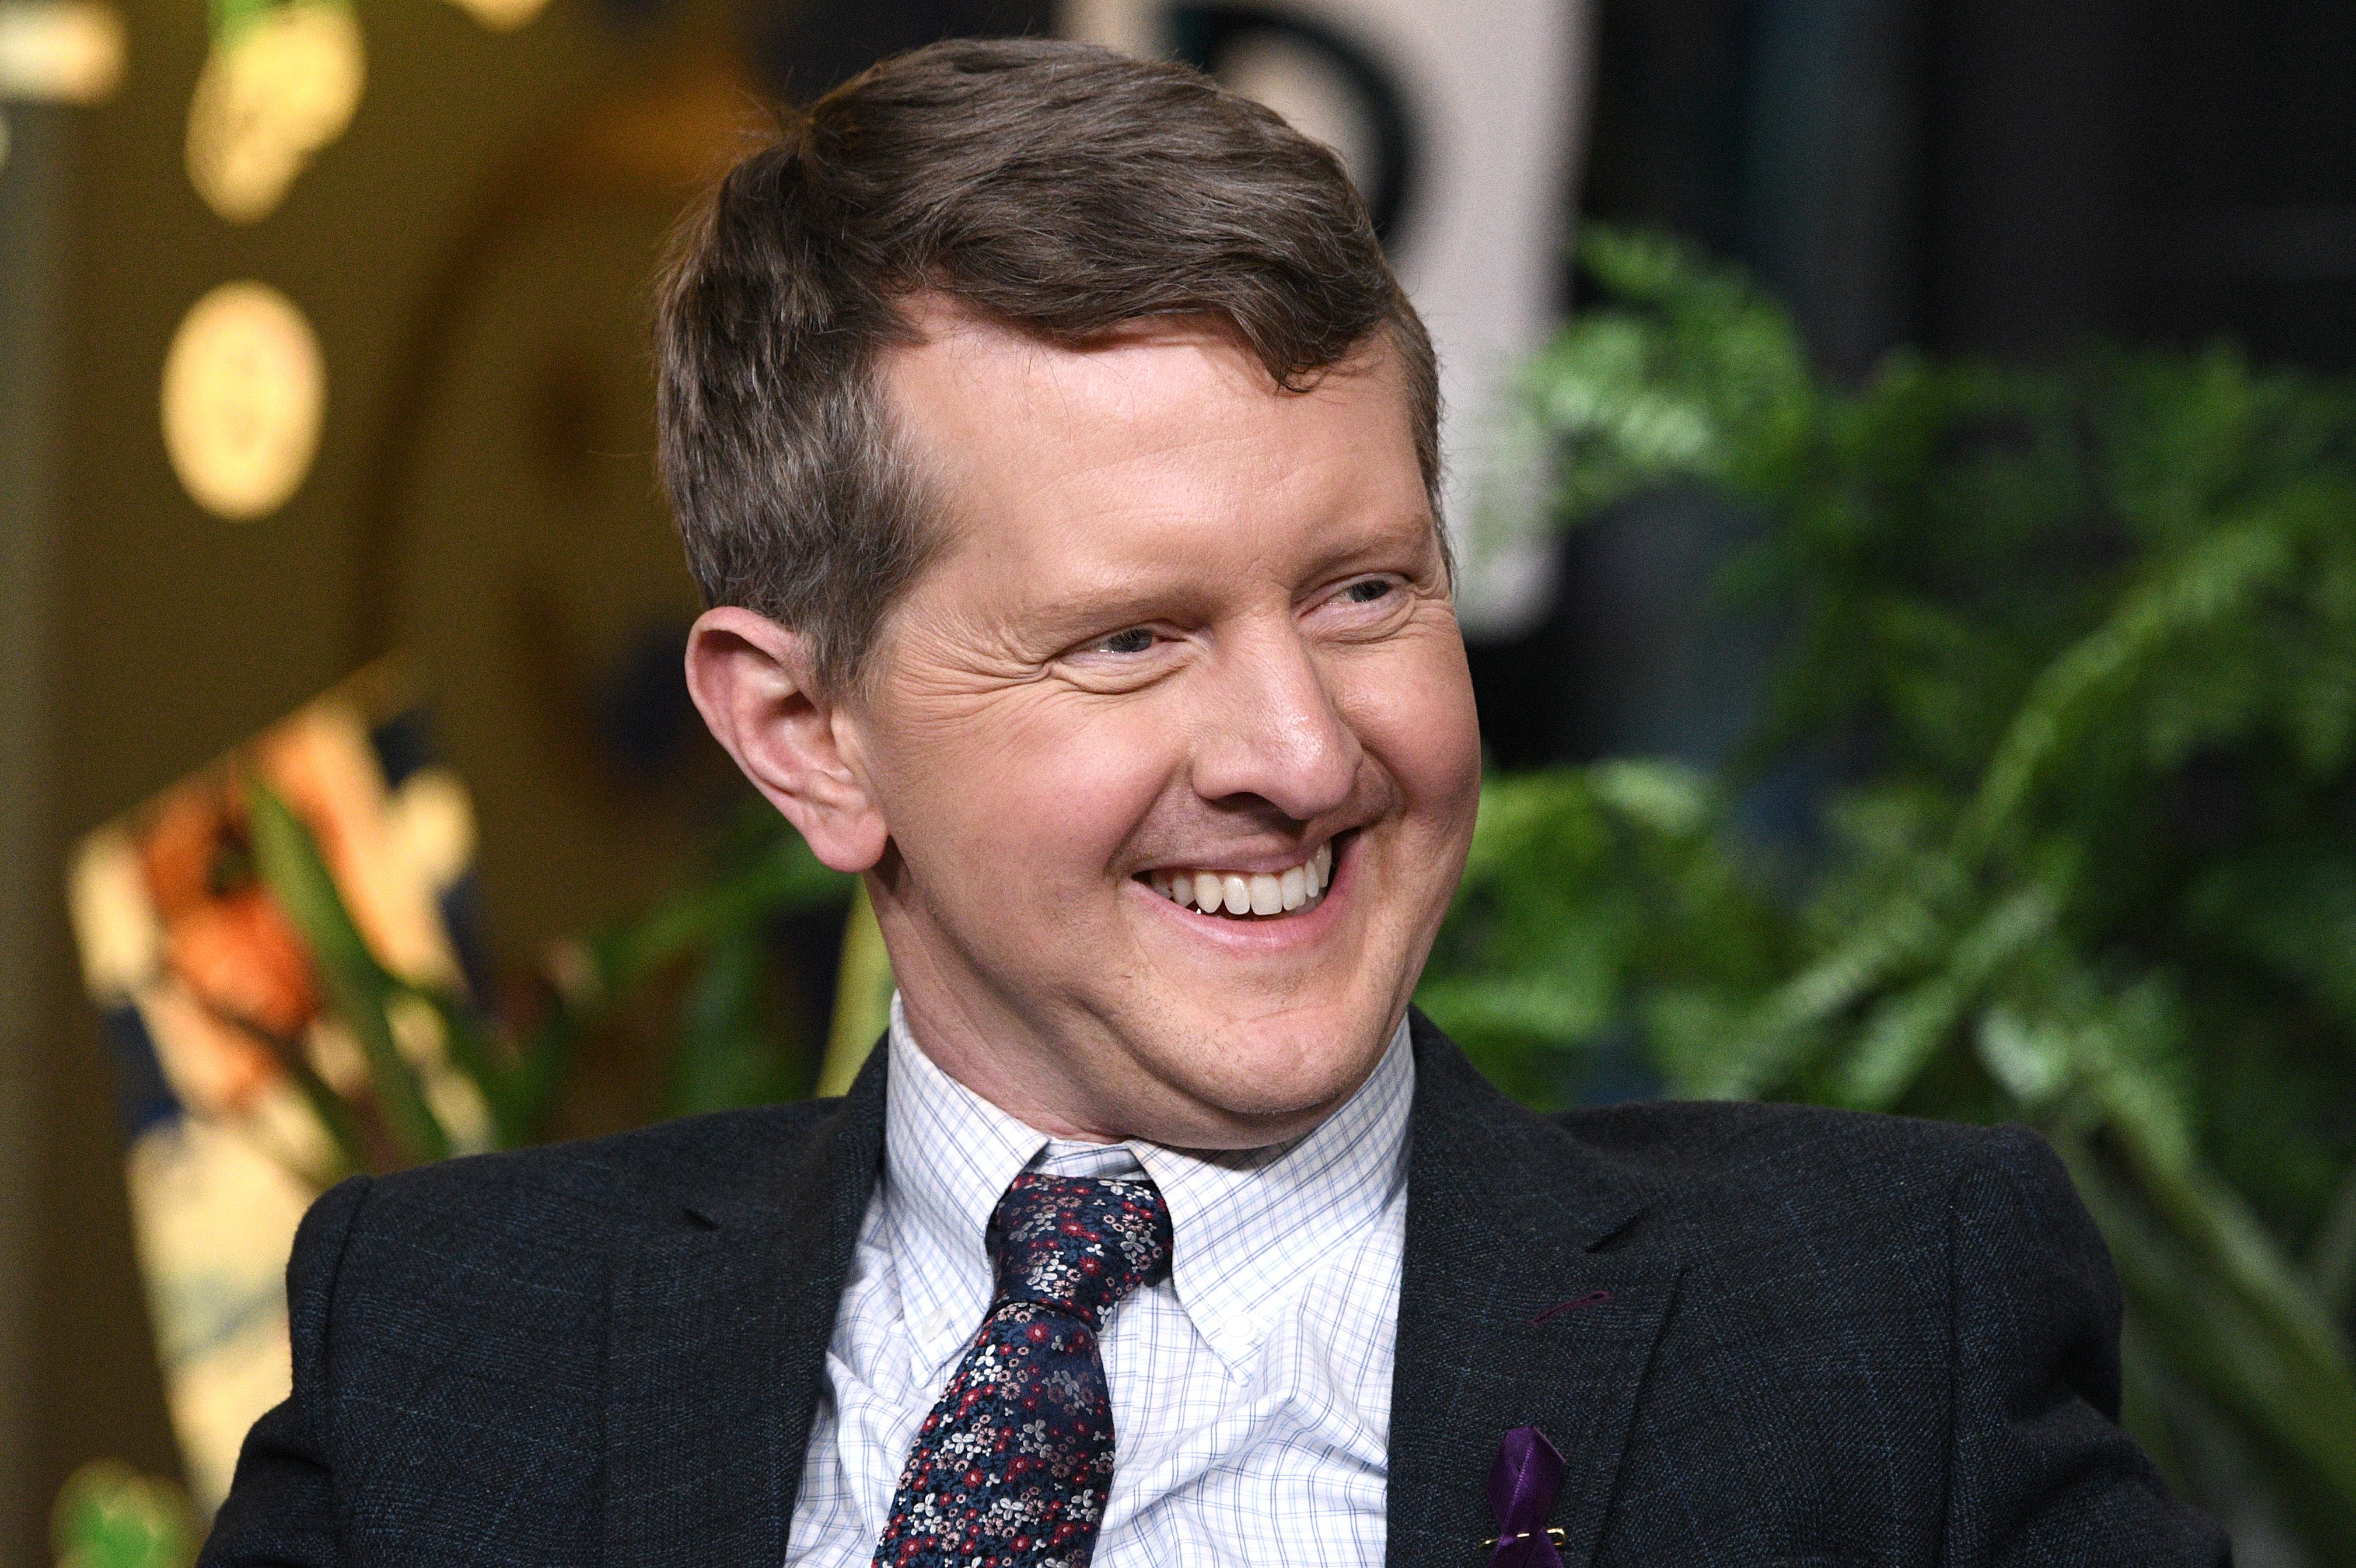 Ken Jennings to Replace Alex Trebek as Interim Host of "Jeopardy!"